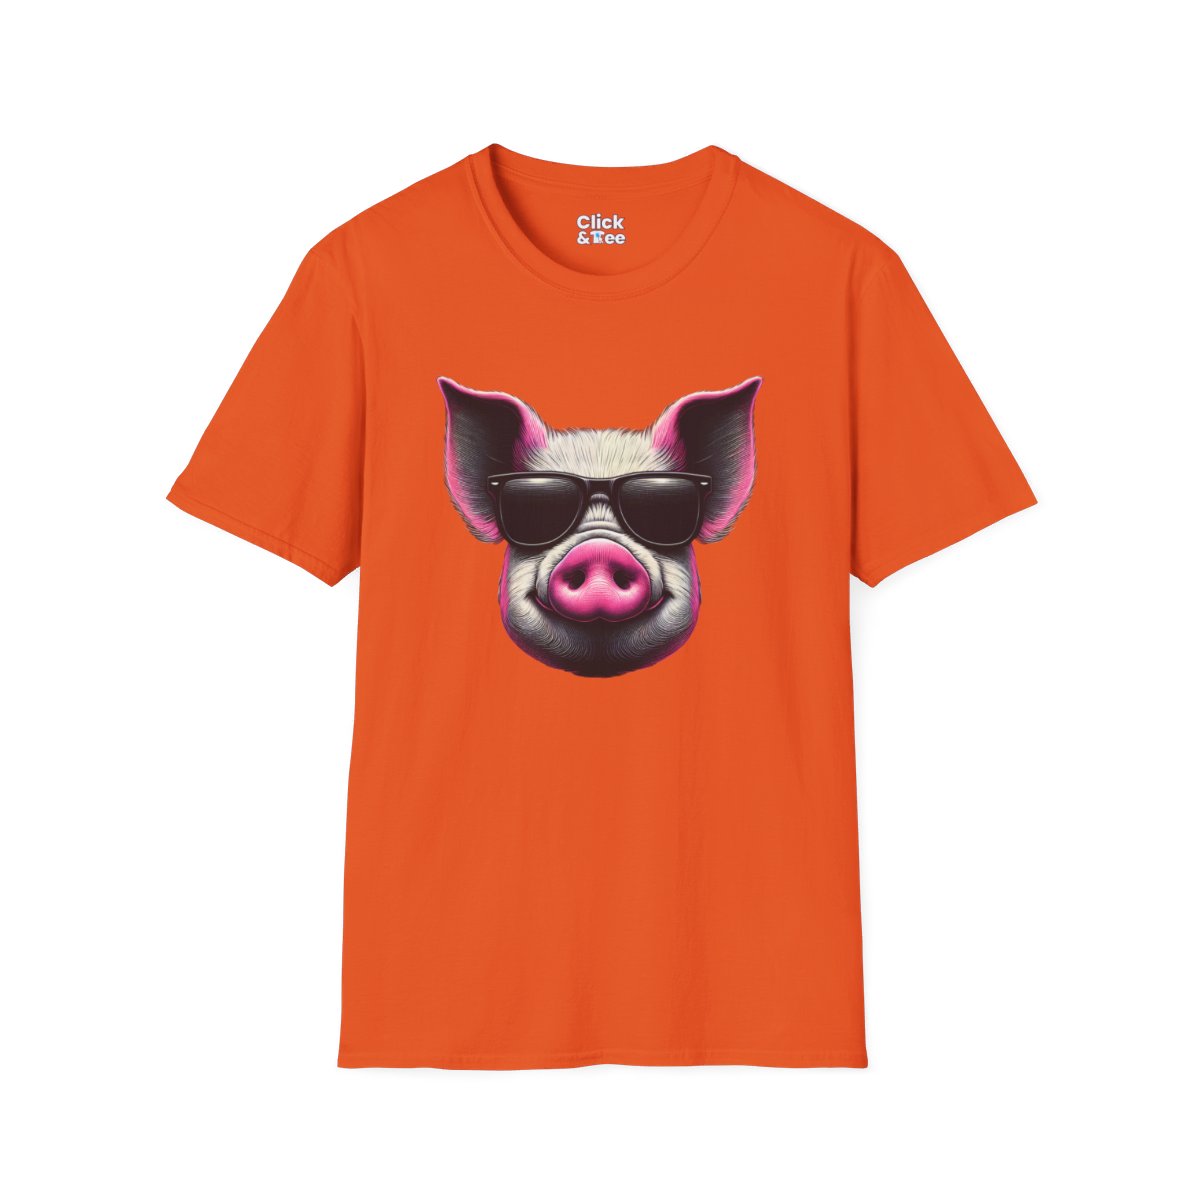 Graphic ArtPink Pig Face Unique T-Shirt Image 9